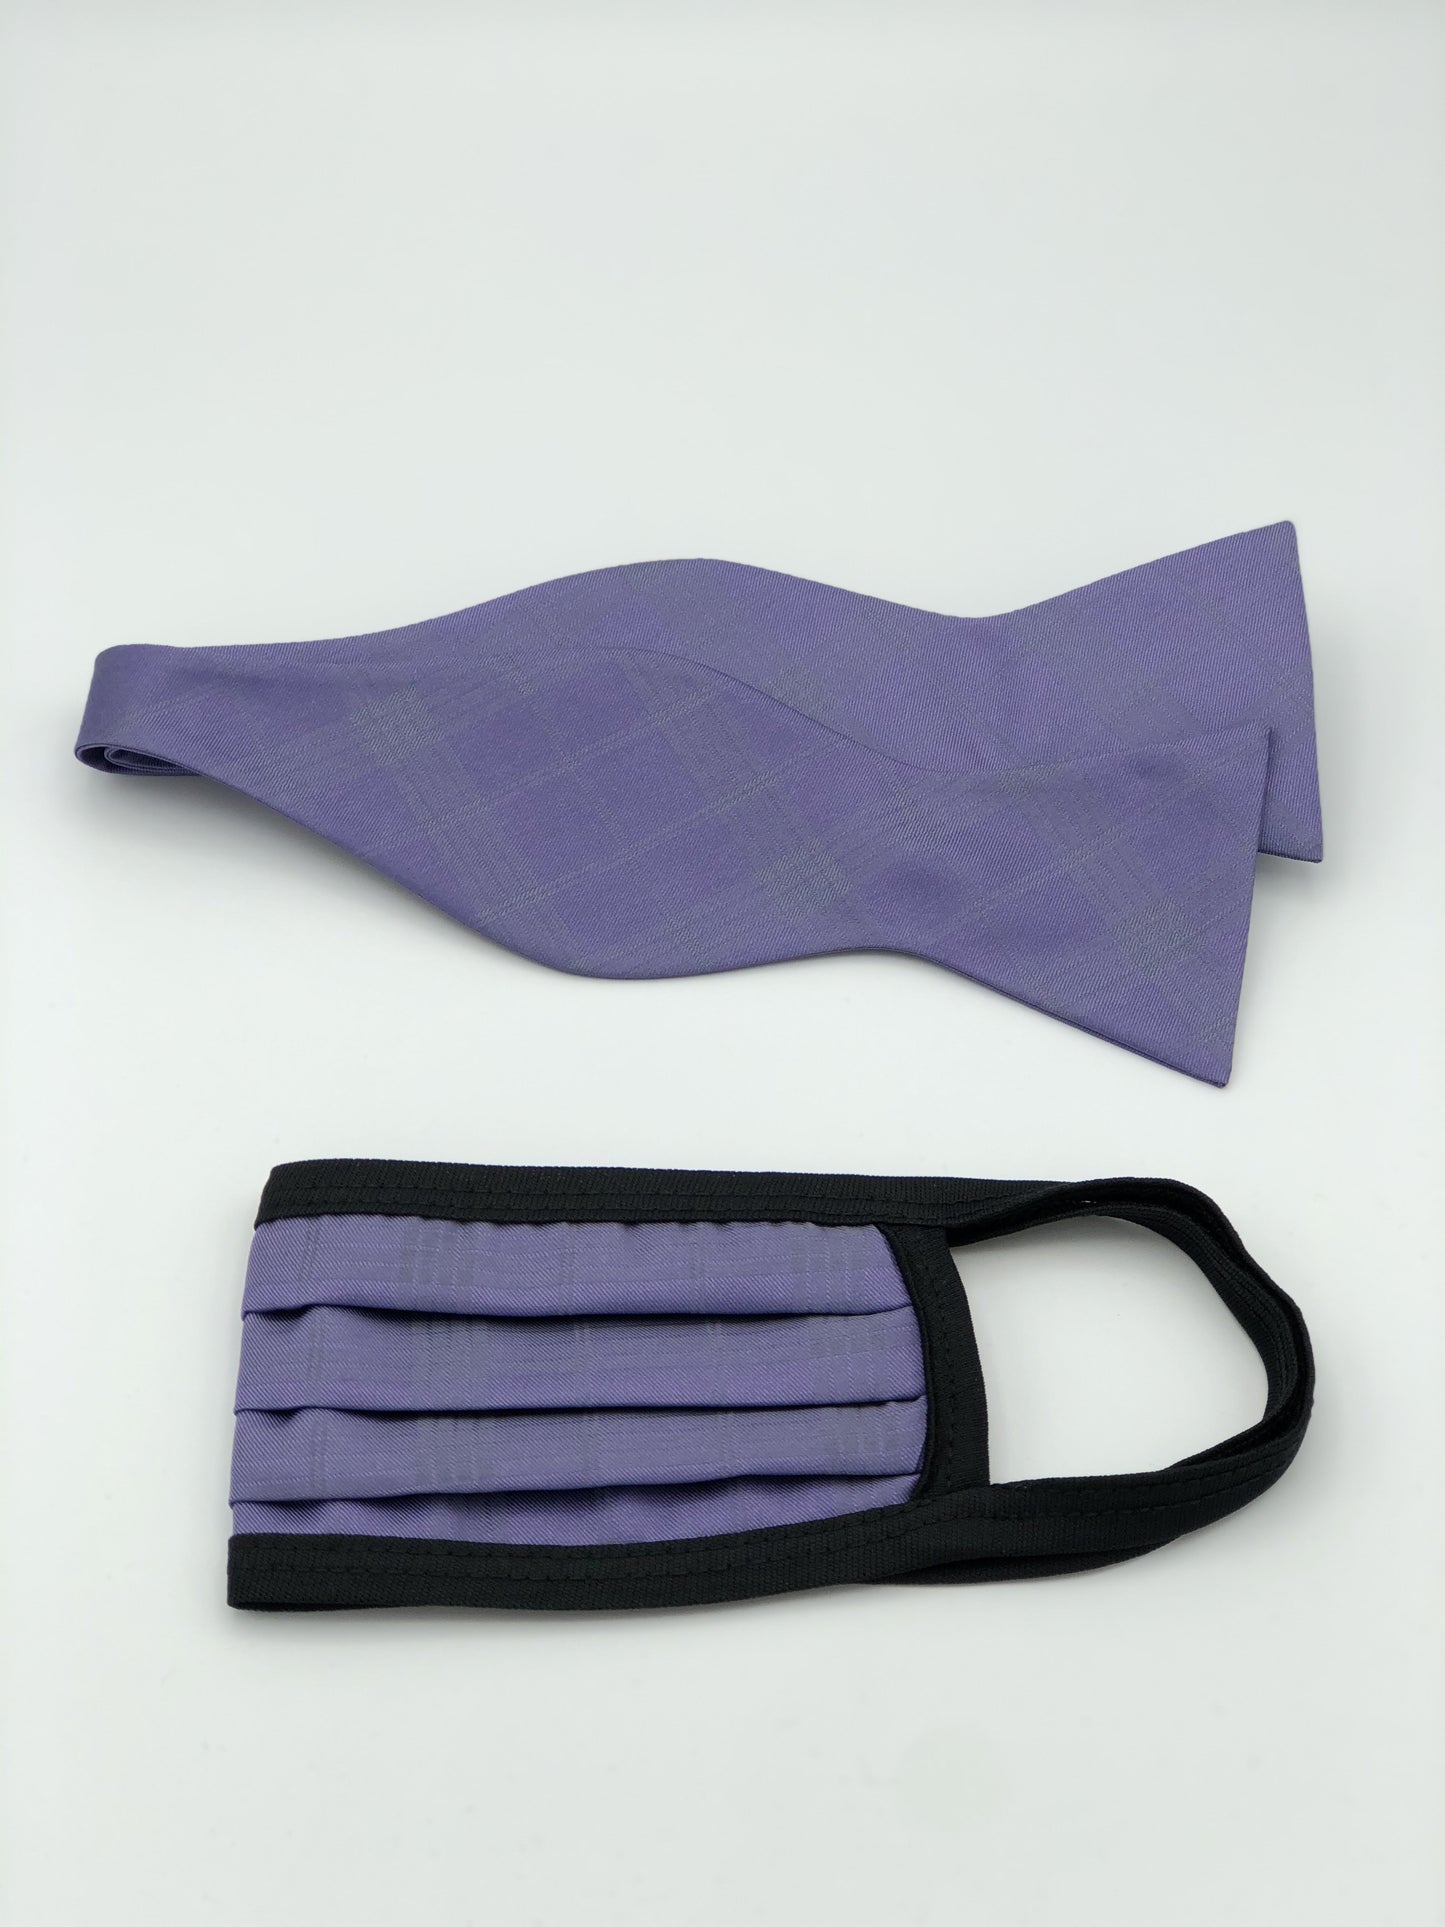 Self Bow Tie & Face Mask Set, Lavender Plaid BT106-4